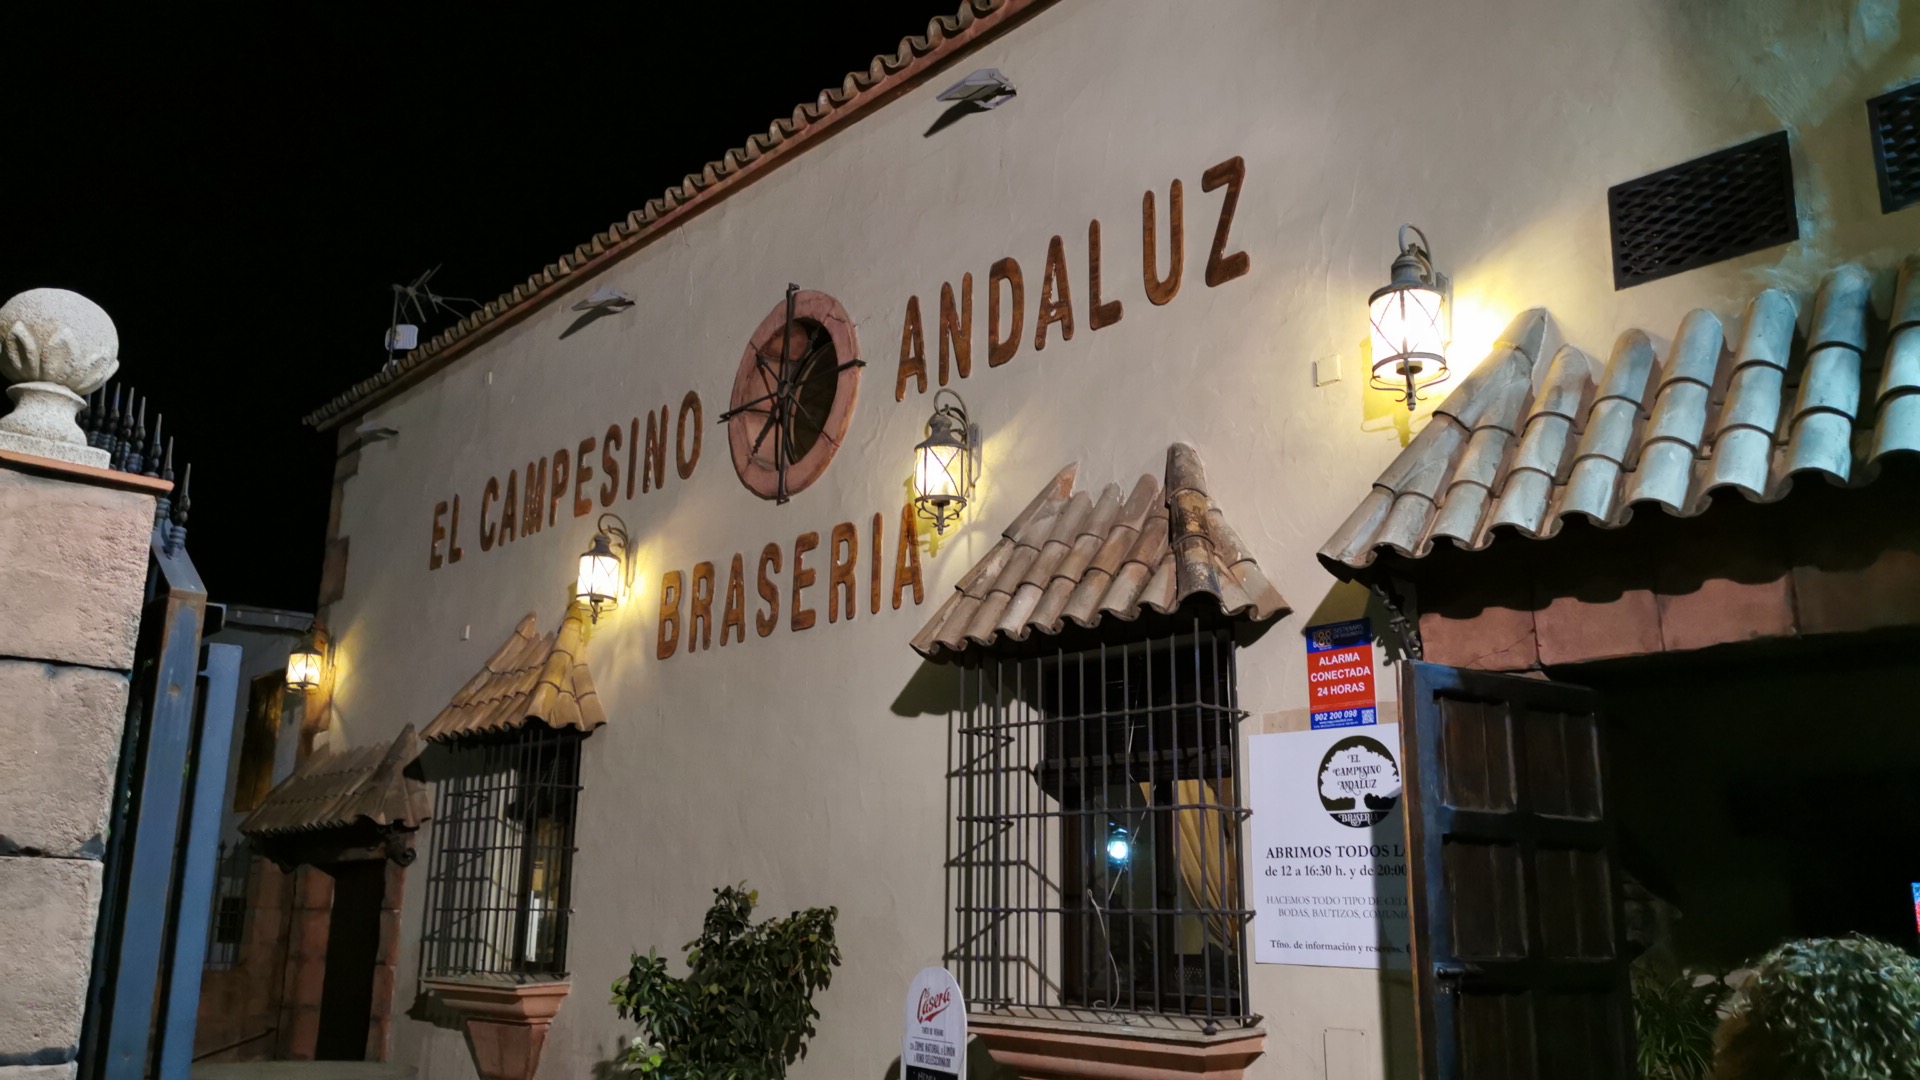 El Campesino Andaluz